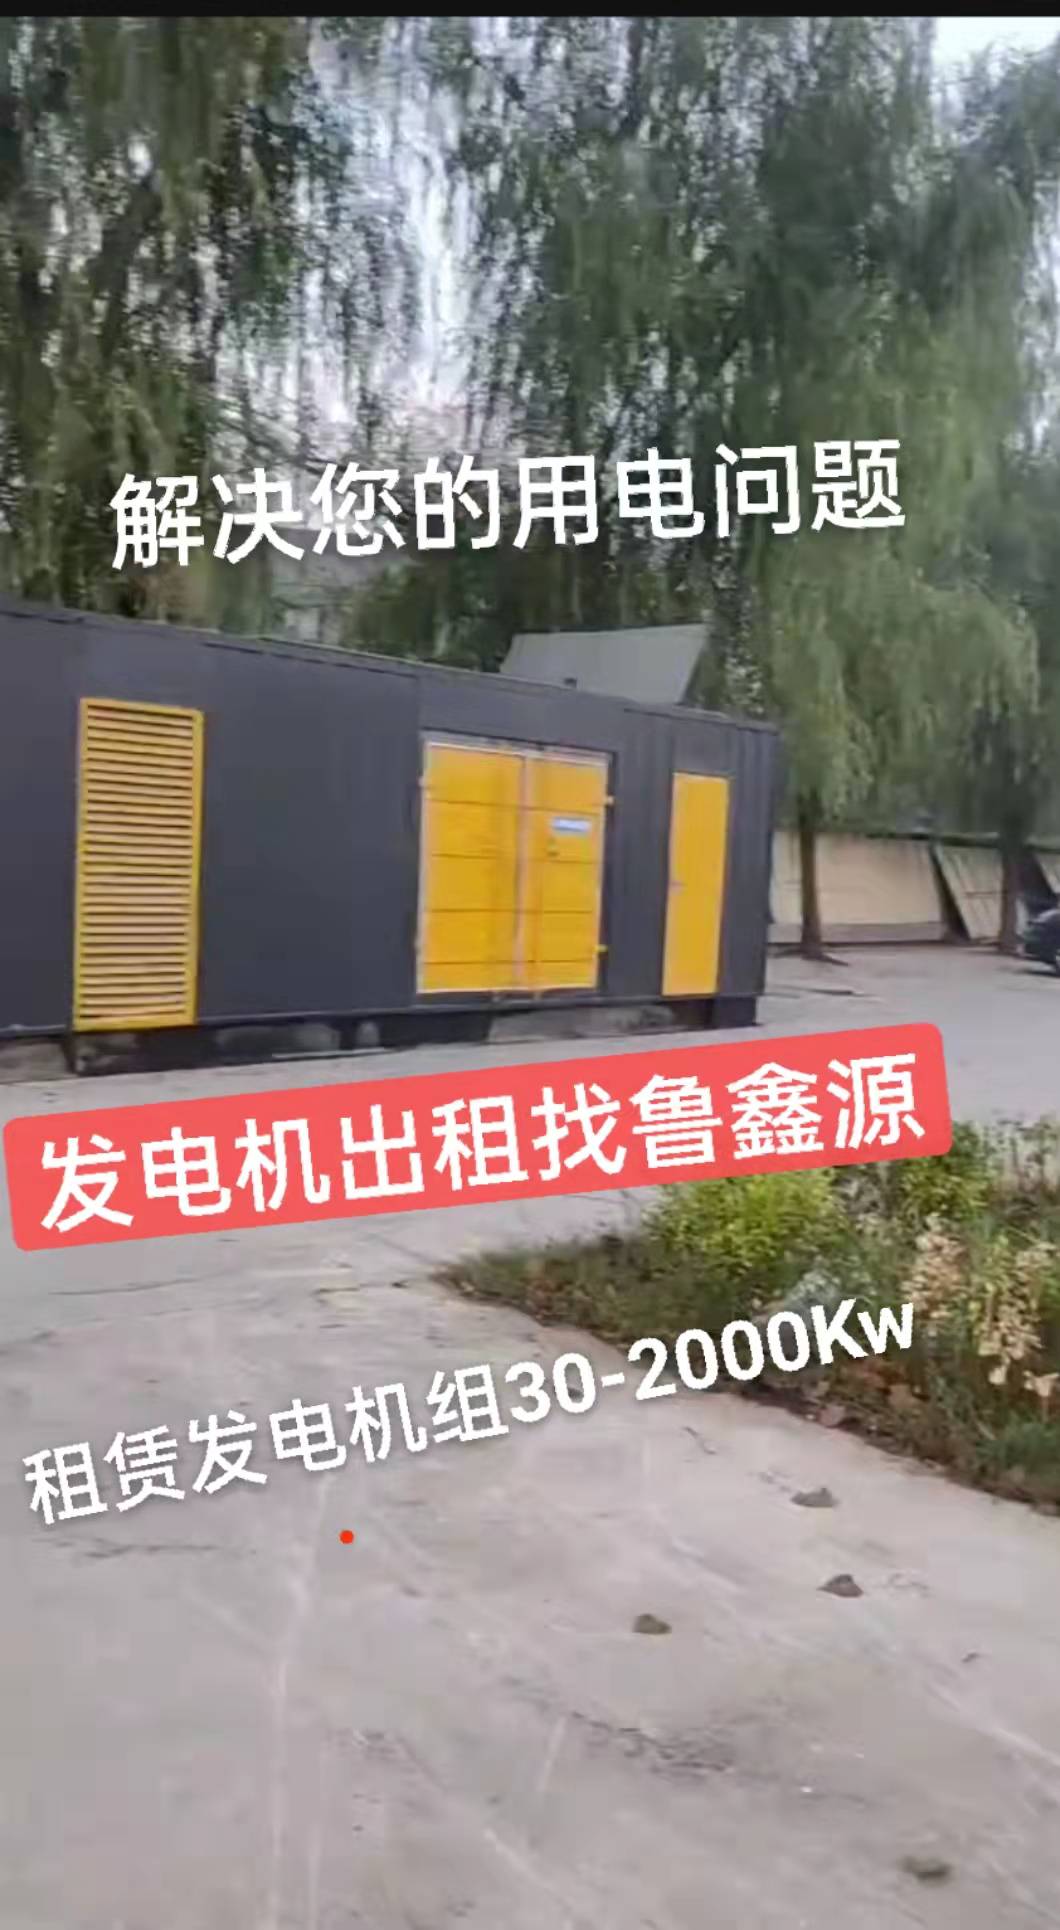 天津600kw发电车买卖